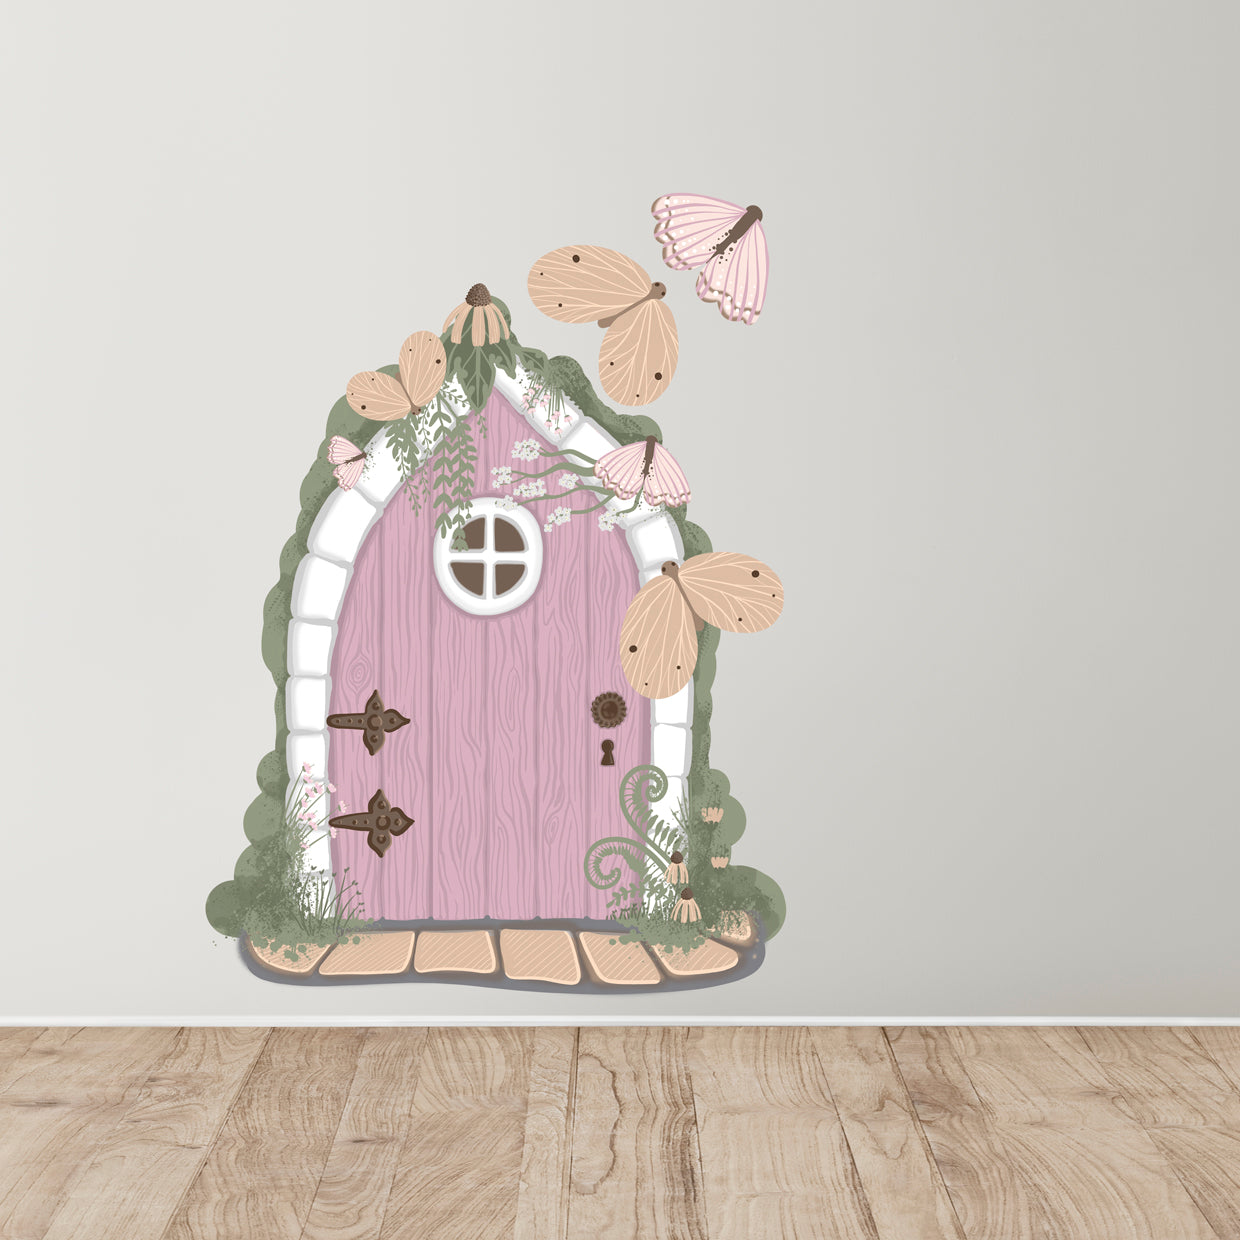 Fairy door removable wall decals